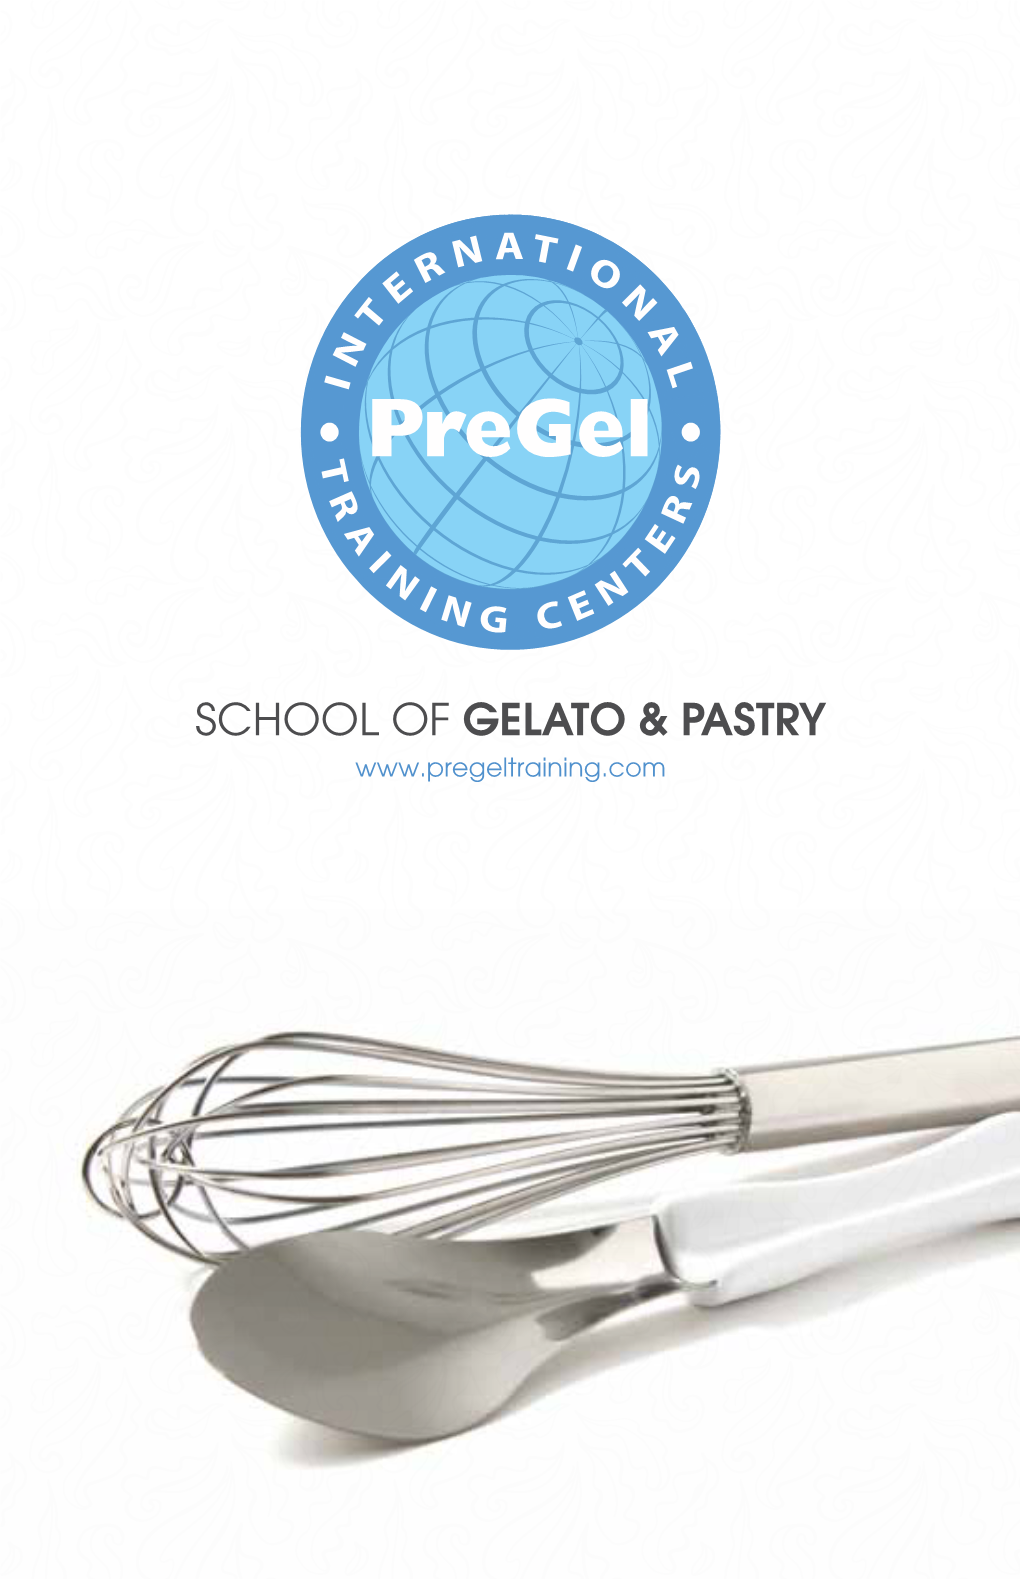 School of Gelato & Pastry